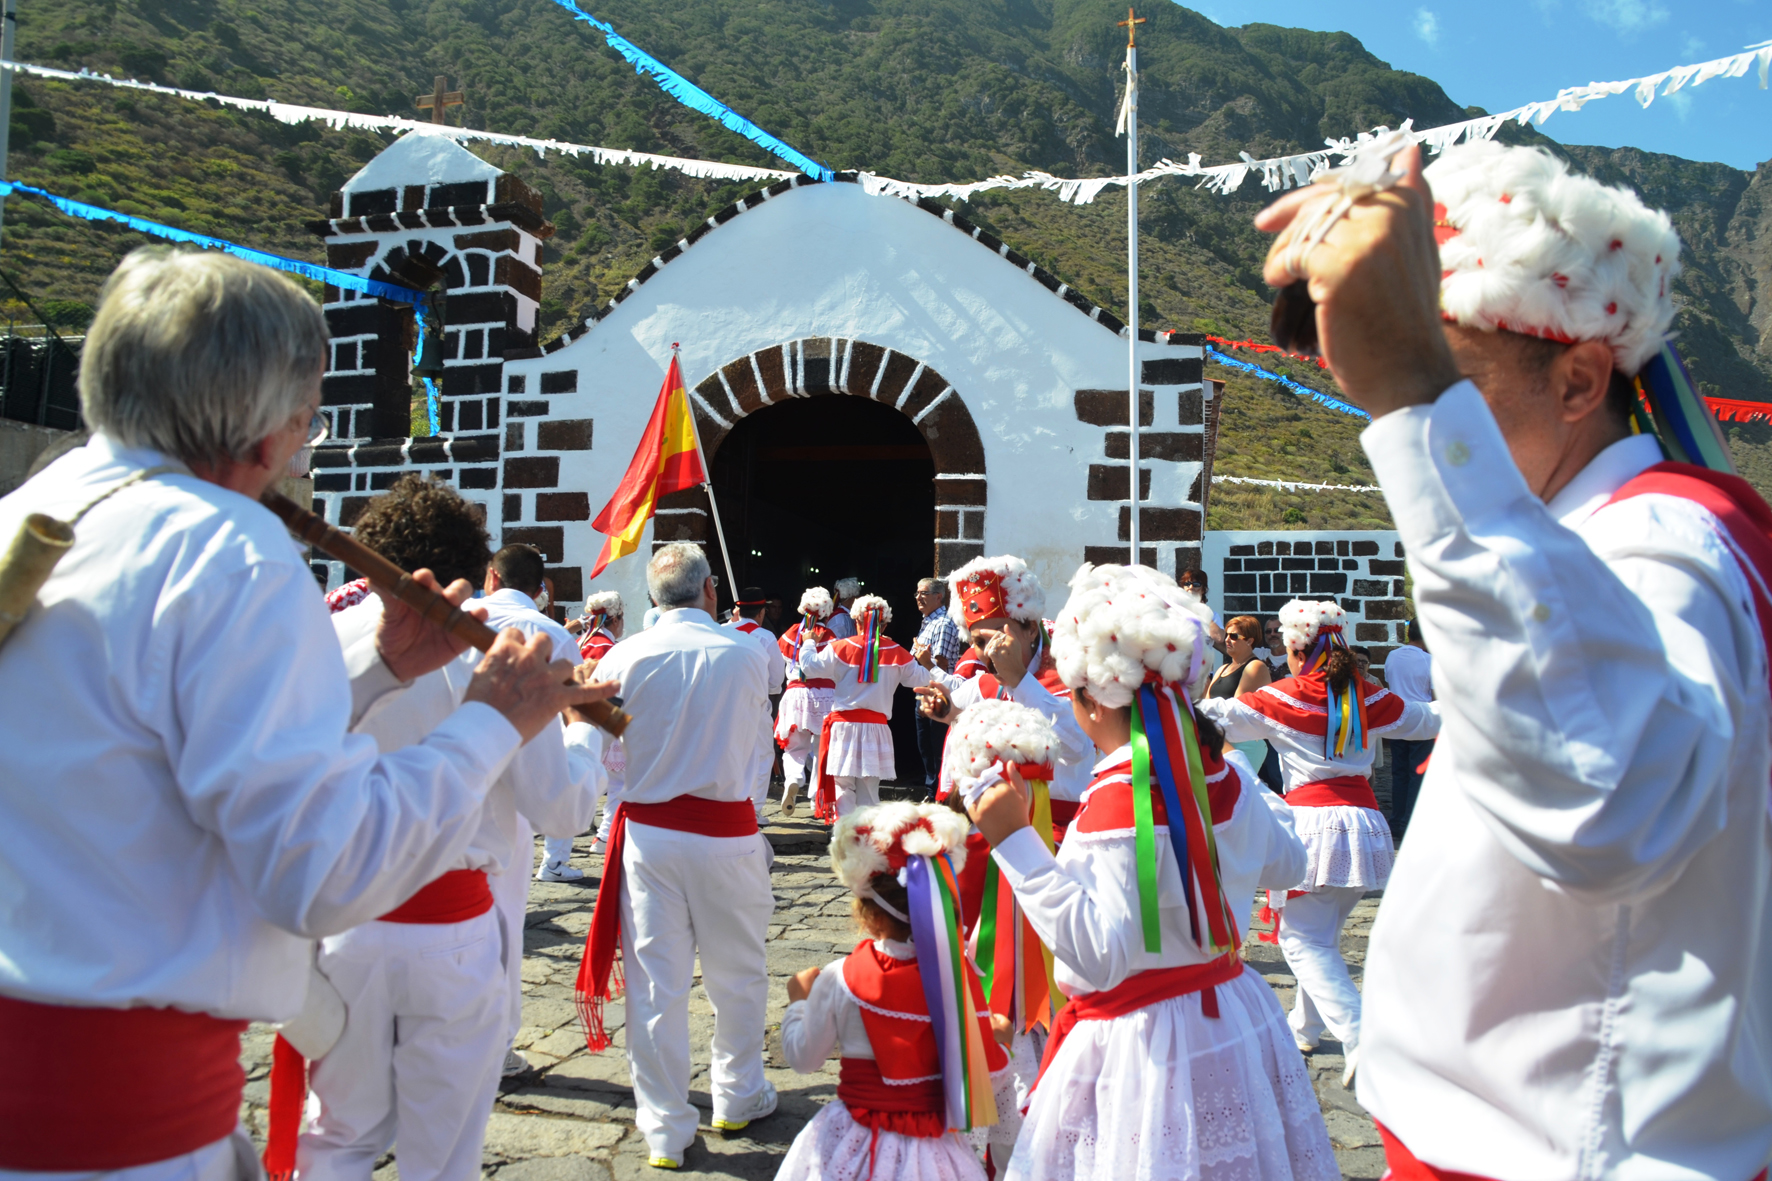 El folklore, el baile de cuerdas y la parranda concurren este fin de semana en el pueblo de Sabinosa, en la Fiesta de San Simón